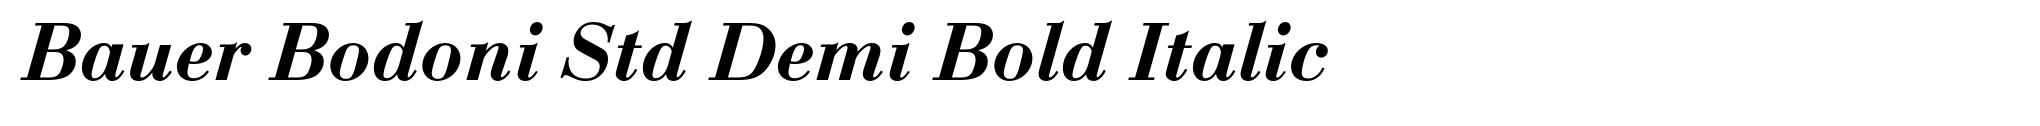 Bauer Bodoni Std Demi Bold Italic image